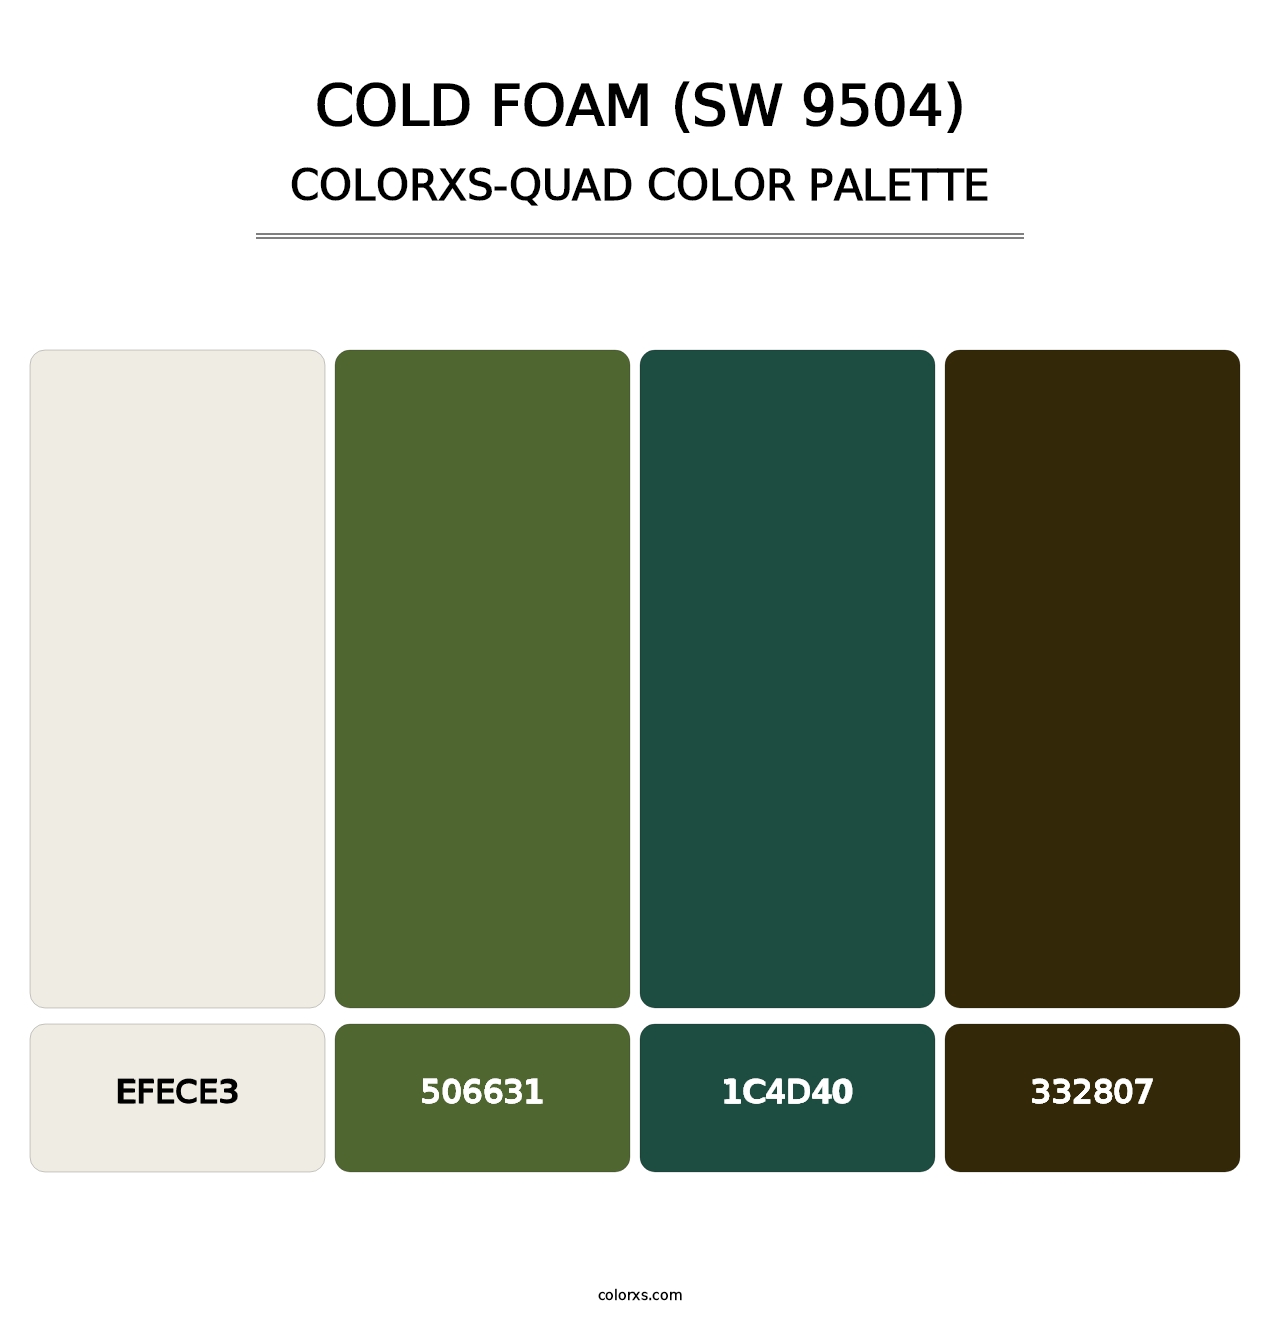 Cold Foam (SW 9504) - Colorxs Quad Palette